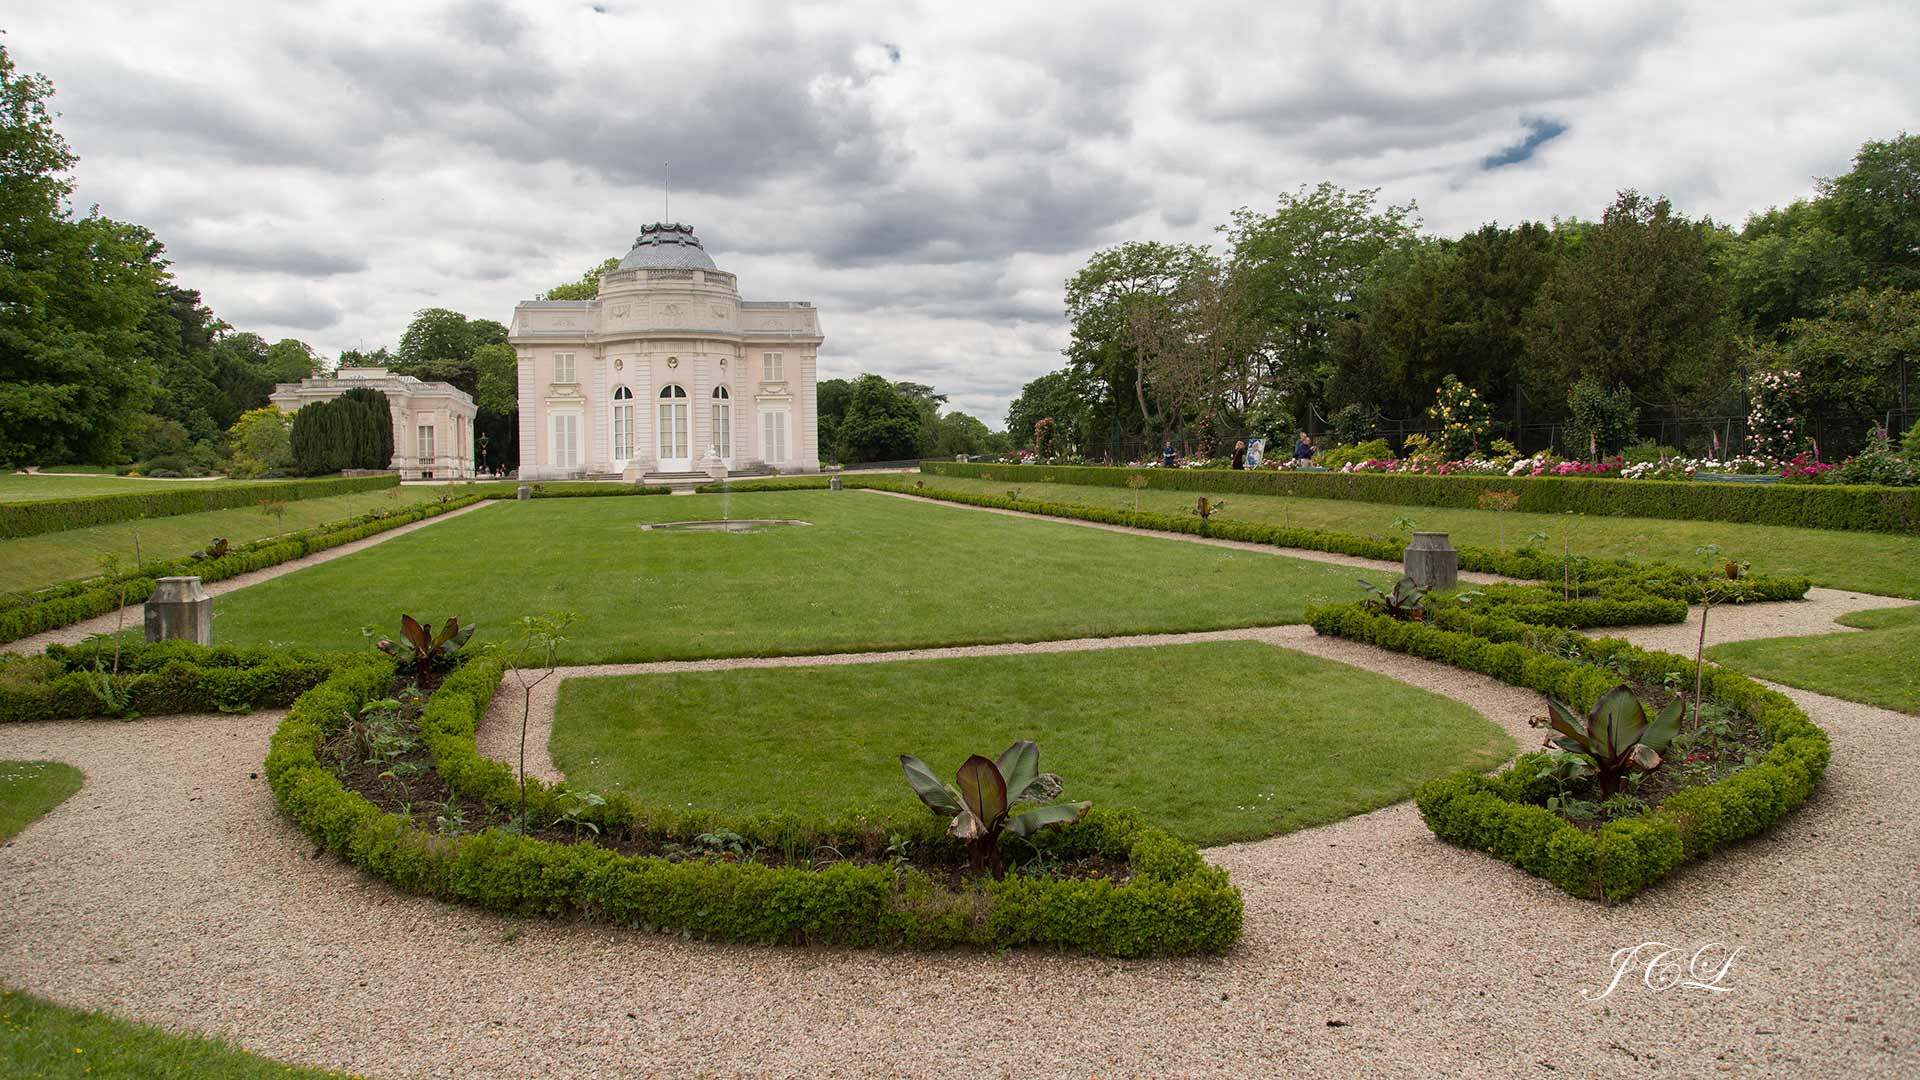 Château et son Parterre du Parc de Bagatelle dans le Bois de Boulogne.